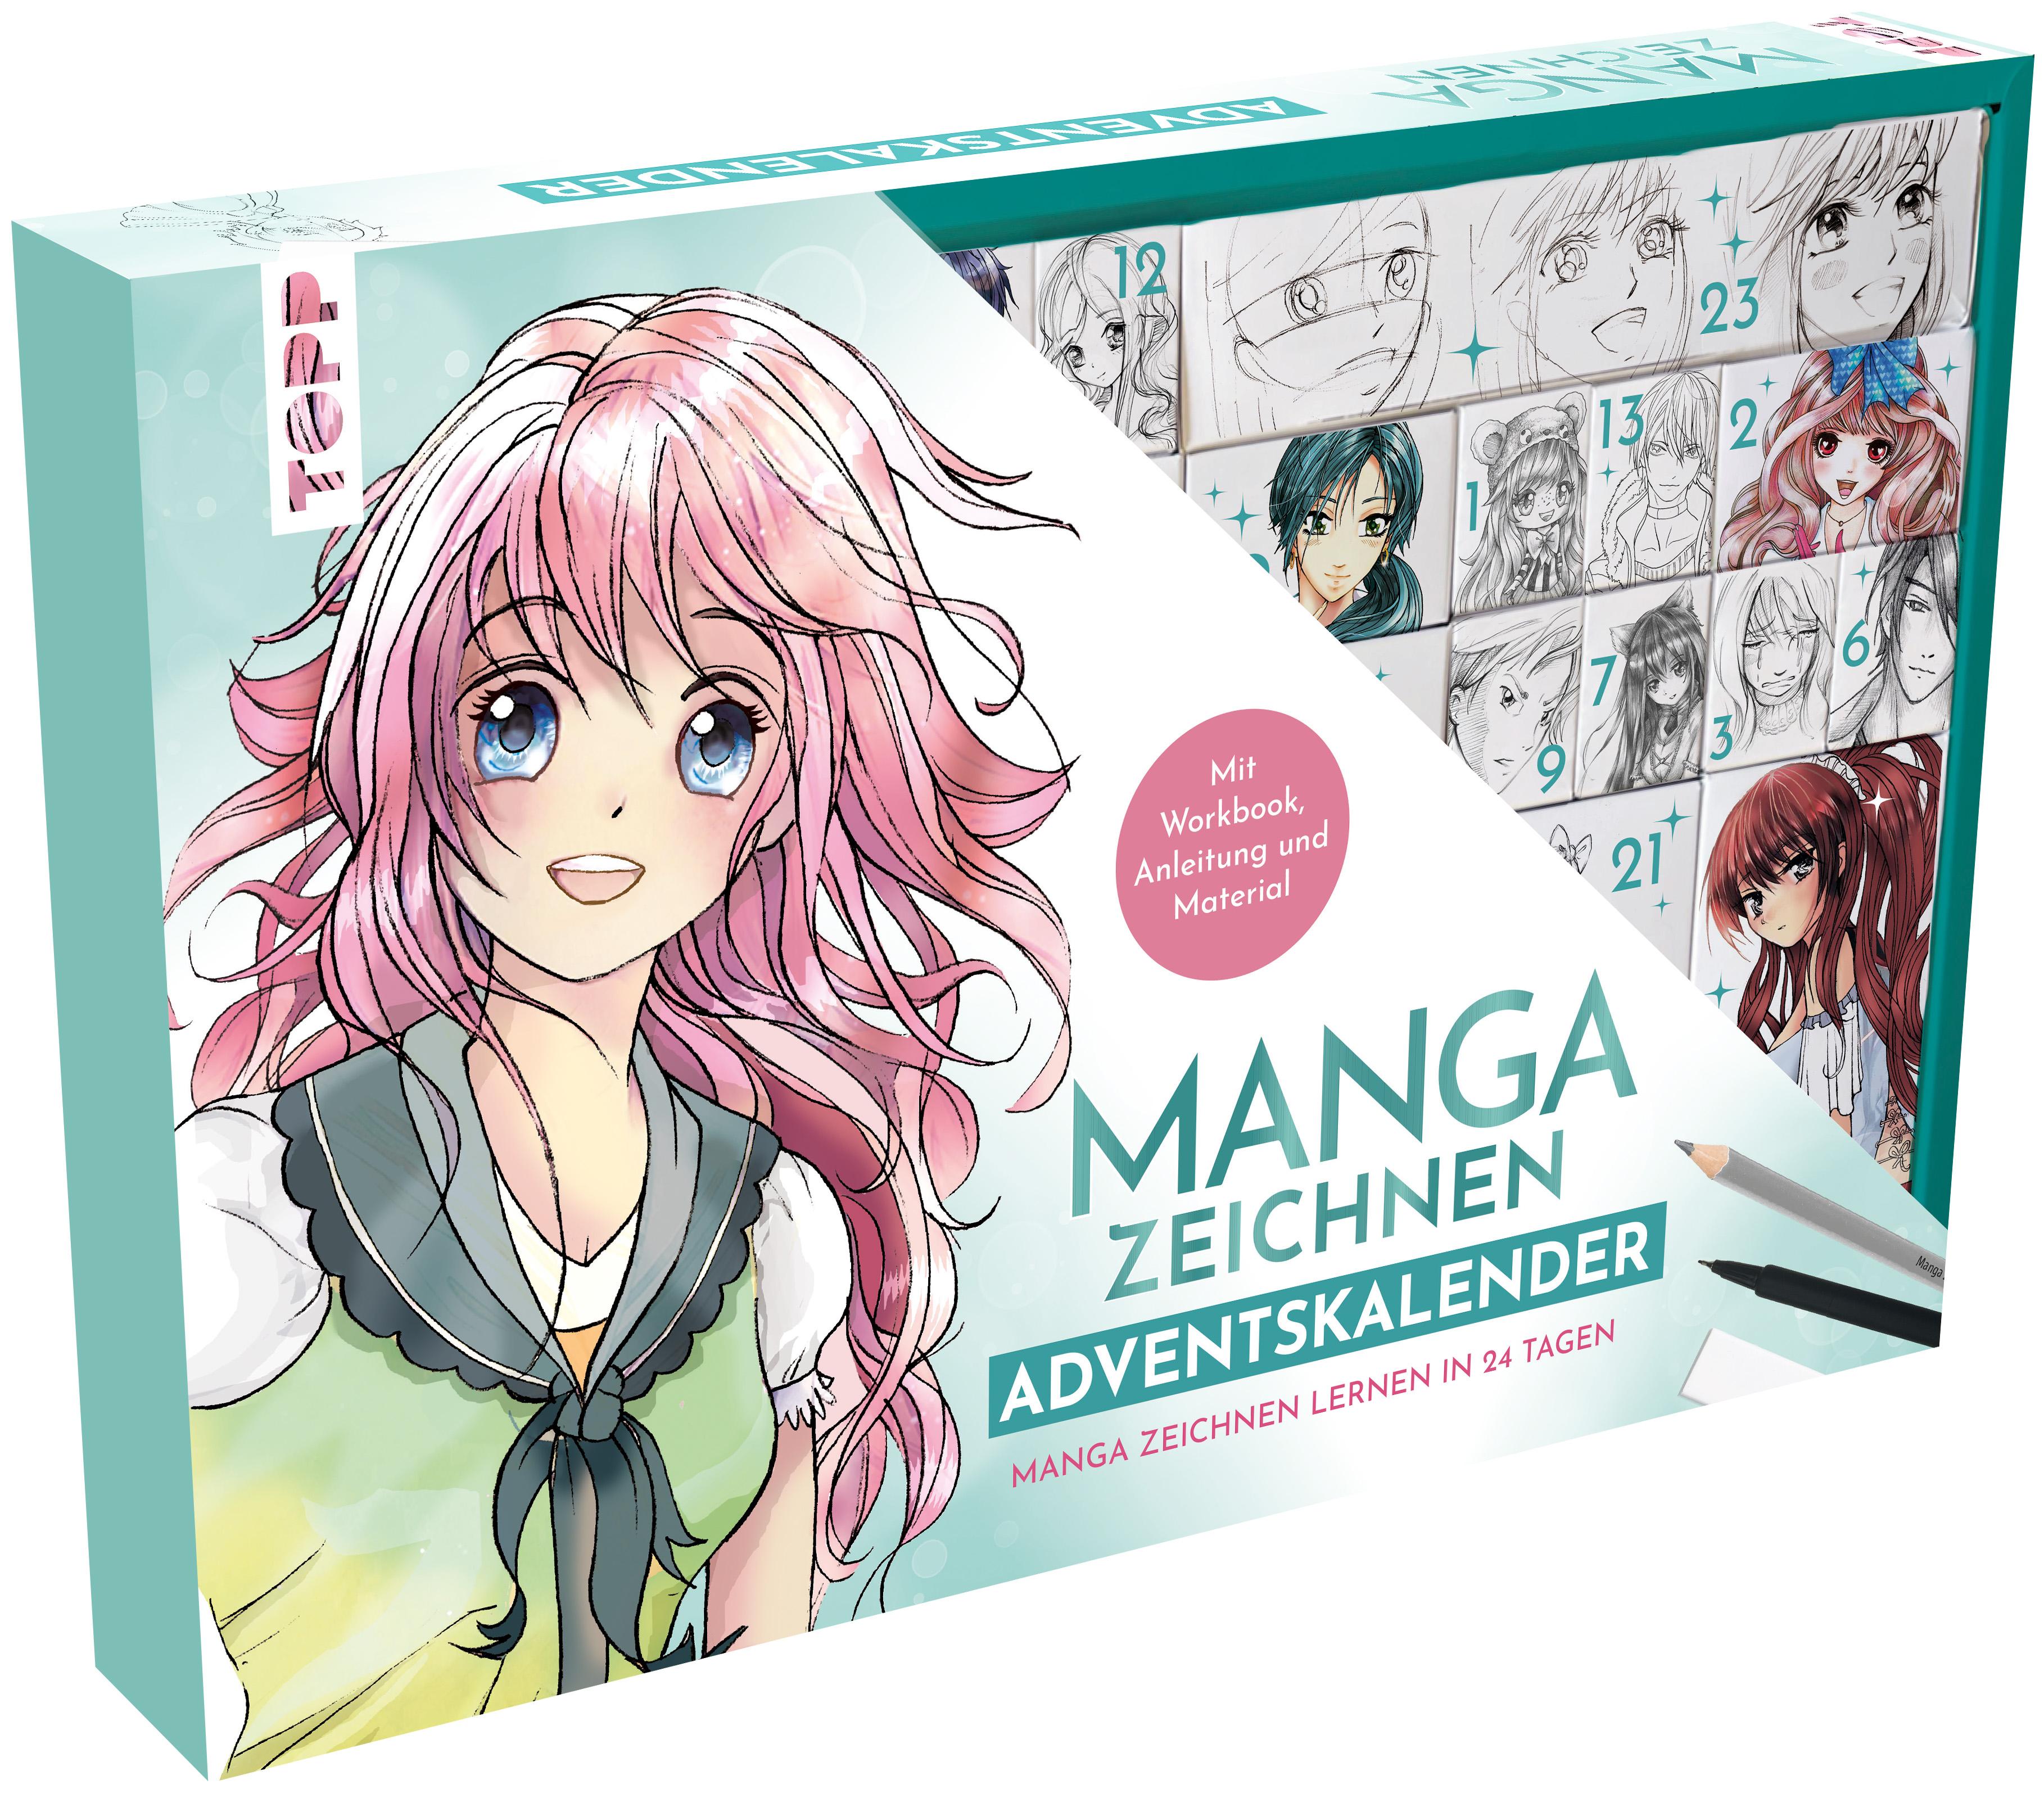 Manga zeichnen Adventskalender - Manga zeichnen lernen in 24 Tagen. Mit Anleitungsbuch, Workbook und Zeichenmaterial Box (38,5 x 26,5 x 5 cm) mit 24 kleinen Boxen